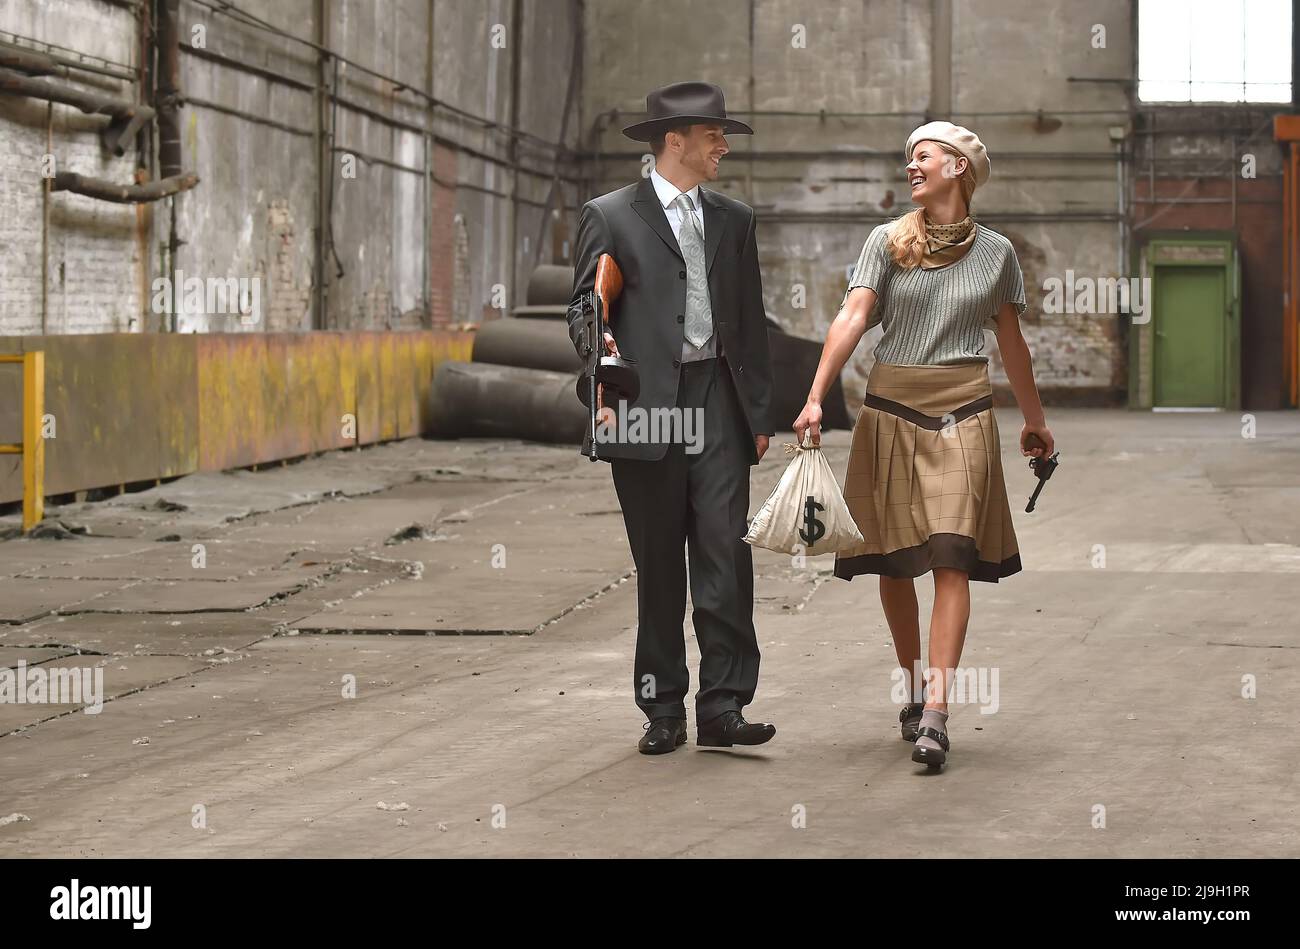 Un jeune couple s'habille avec des vêtements de style 1930. Ils portent chacun une arme comme ils agissent le rôle du célèbre duo de gangsters Bonnie et Clyde. Banque D'Images